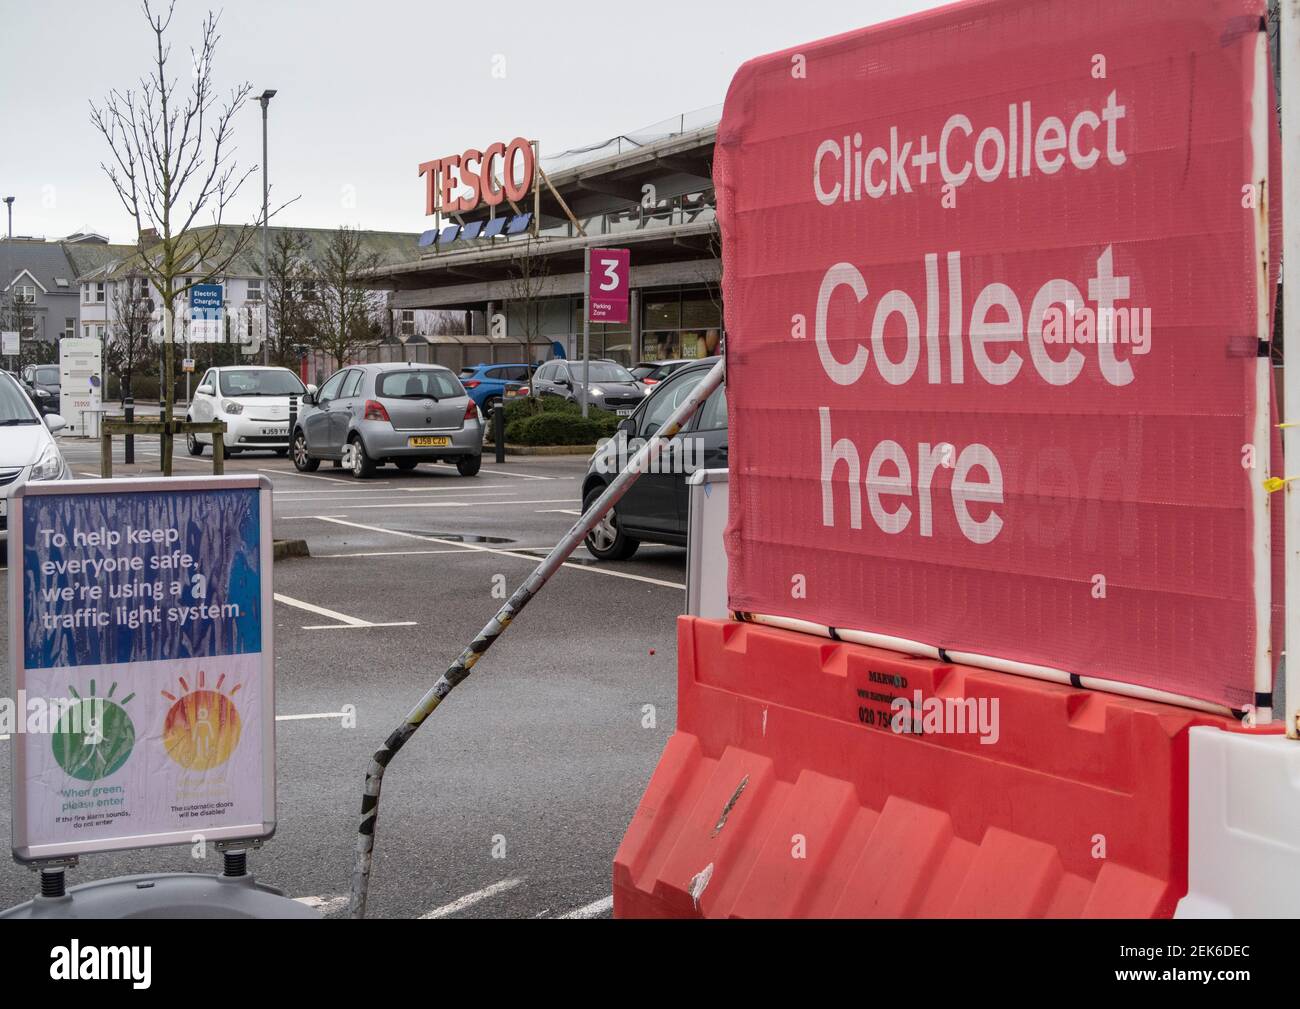 Cliquez et collectez dans un supermarché Tesco à Seaton, Devon. Les systèmes de livraison et de collecte des aliments ont été très demandés pendant la pandémie de Covid. Banque D'Images